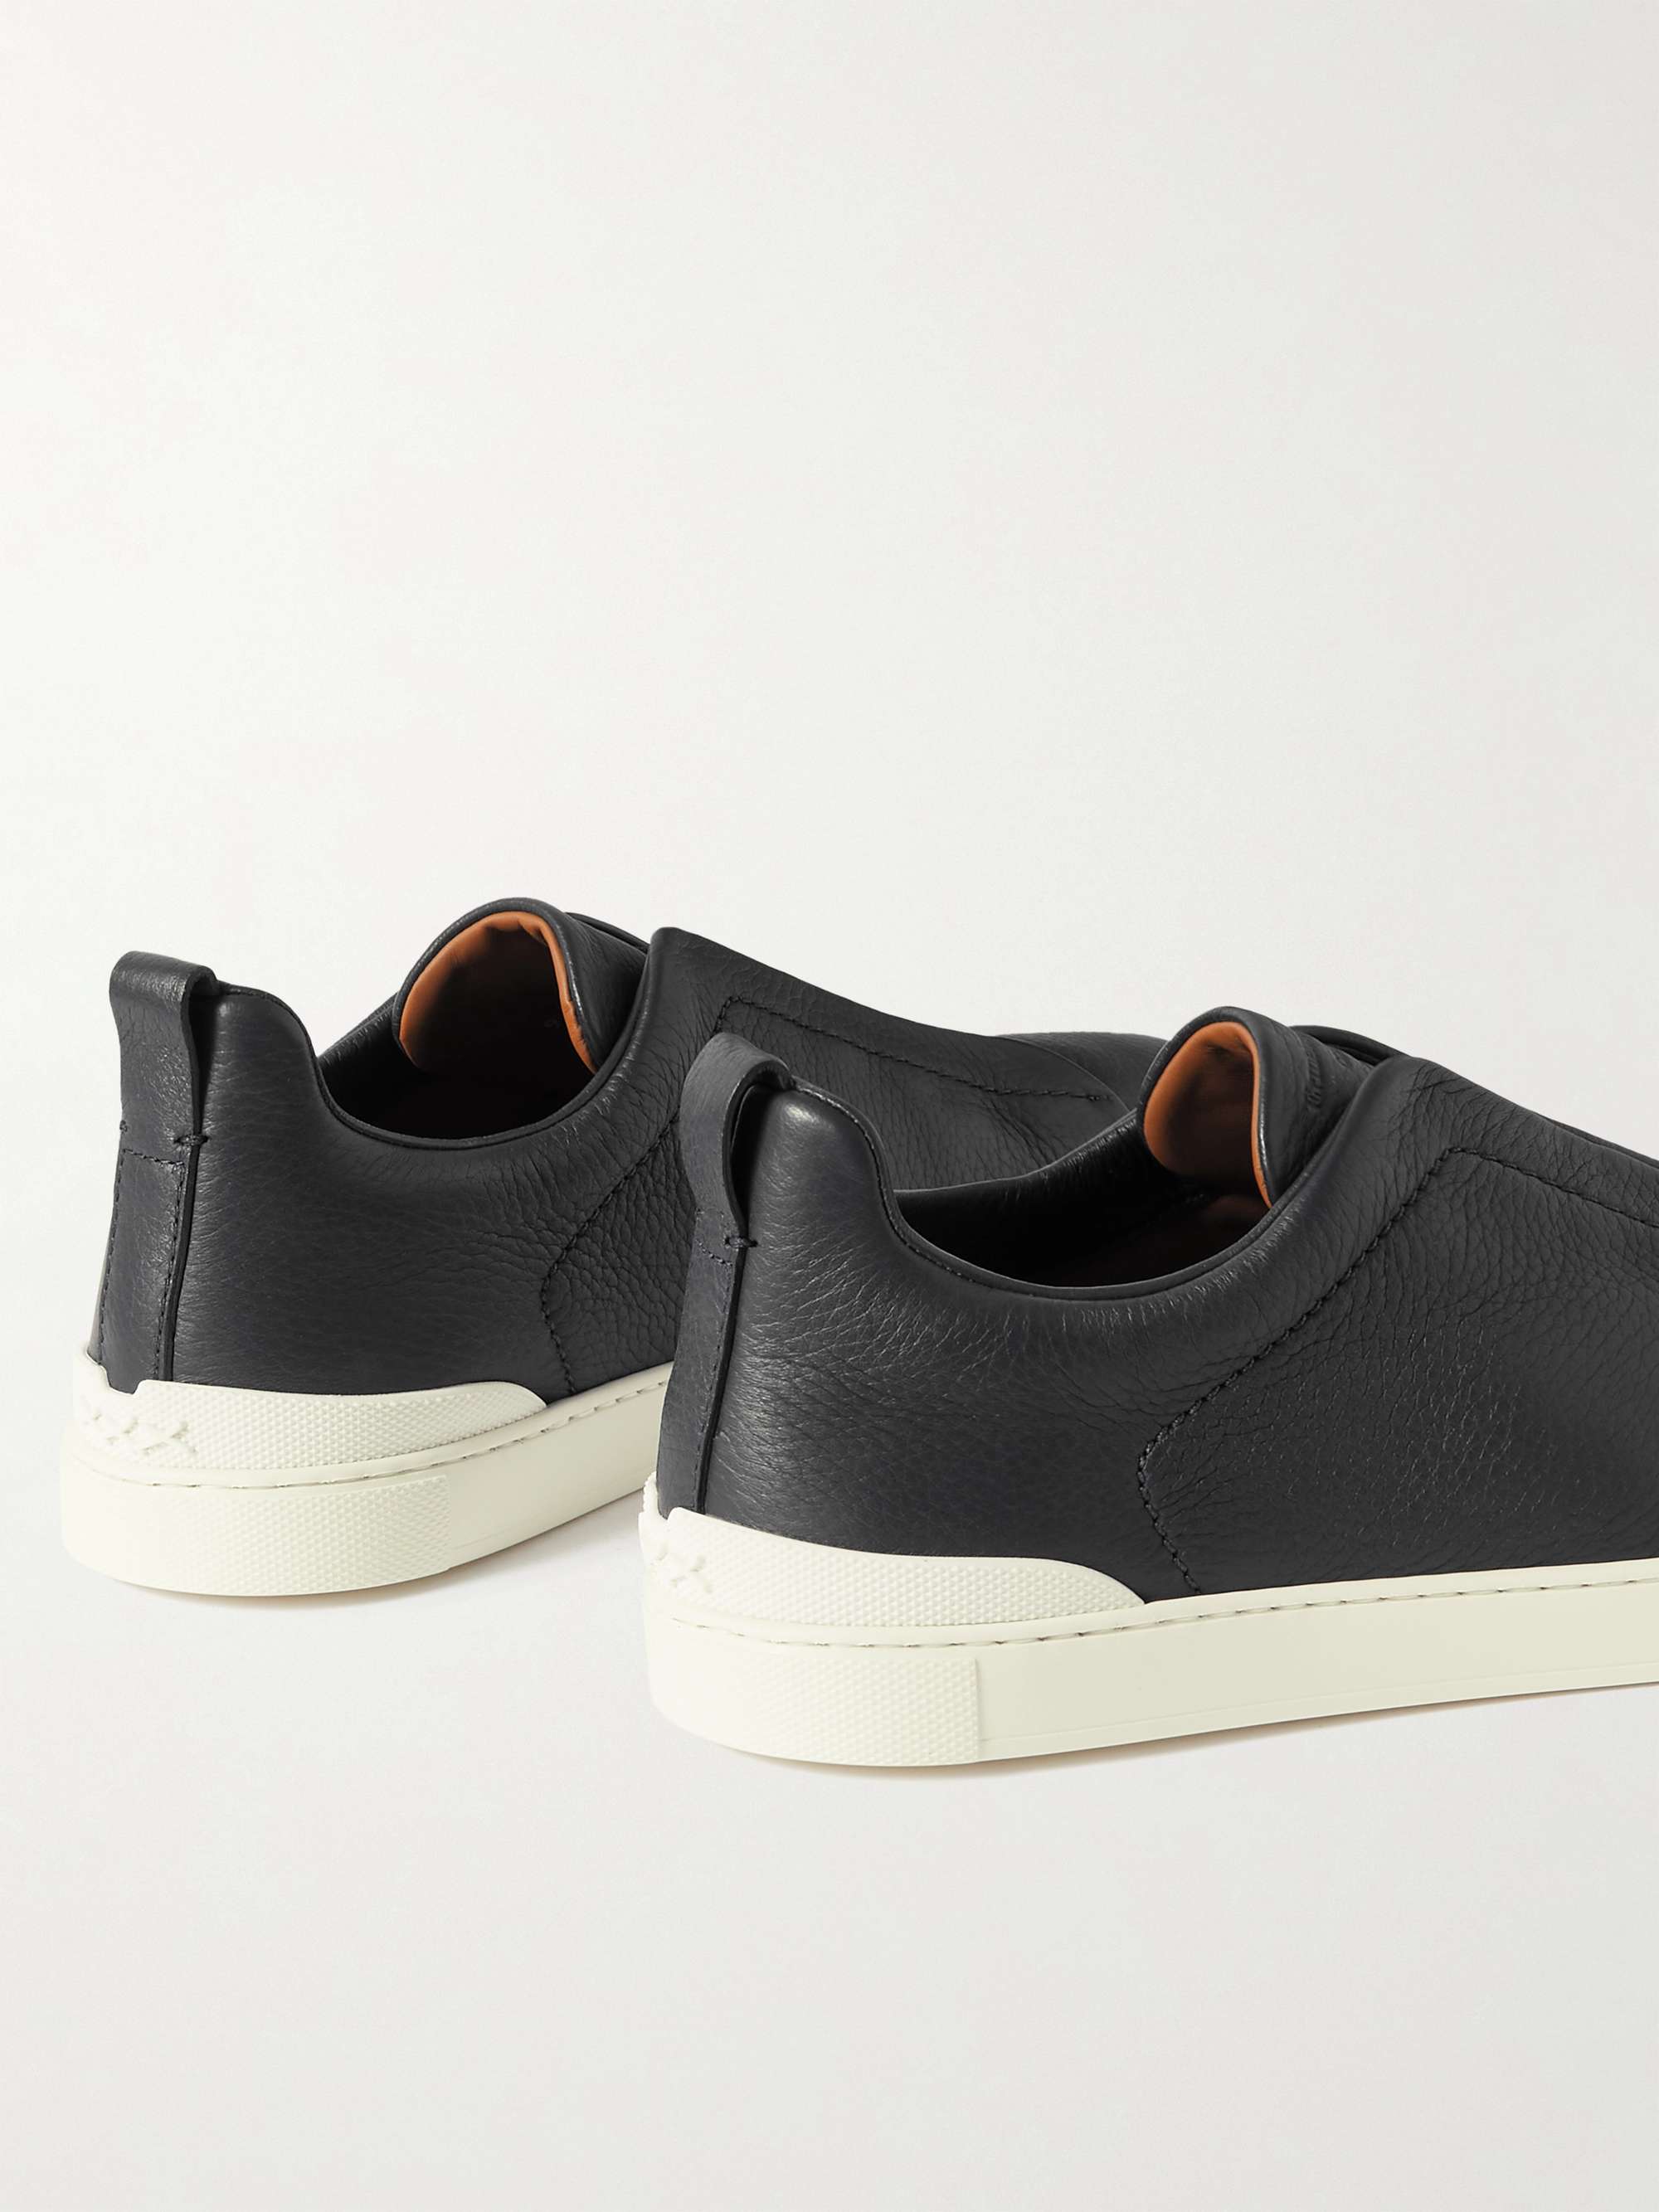 ZEGNA Full-Grain Leather Slip-On Sneakers